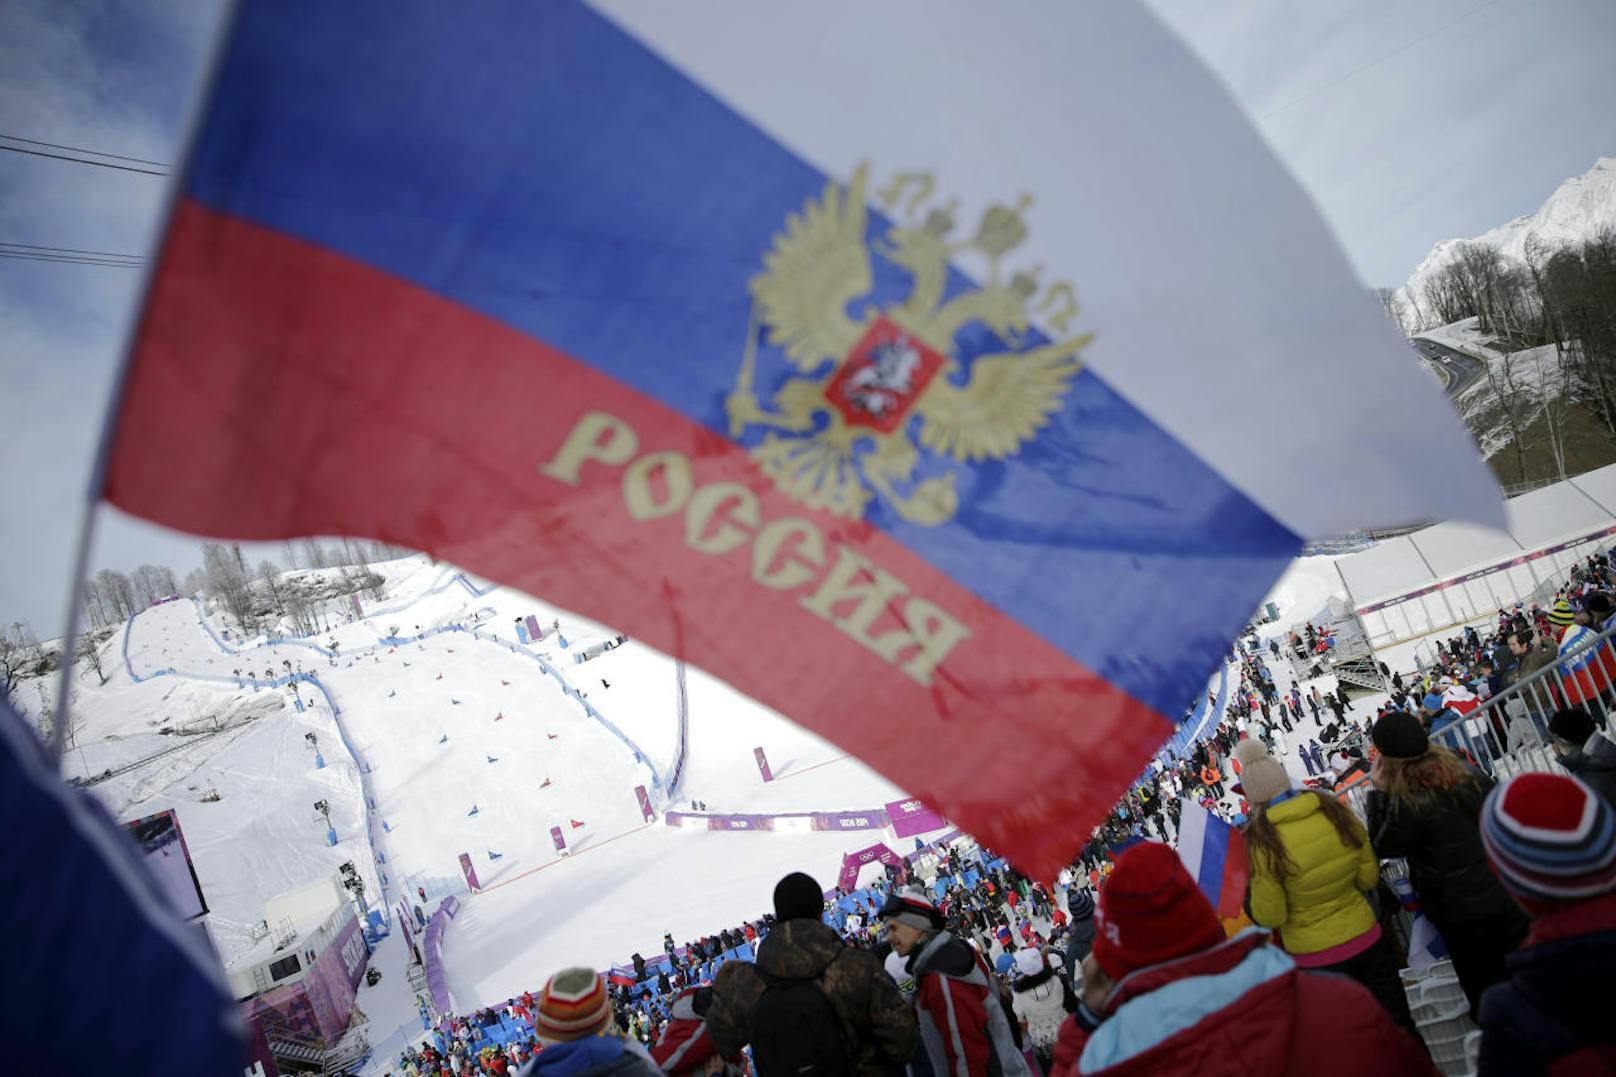 Skandal! Das IOC hat sich entschieden. Russland darf wegen staatlich gesteuerten Dopings nicht an Olympia 2018 teilnehmen. Im Zuge der Enthüllungen wurden auch mehrere Sportler lebenslang gesperrt, darunter der Olympiasieger über 50 Kilometer Langlauf in Sotschi: Alexander Legkow.